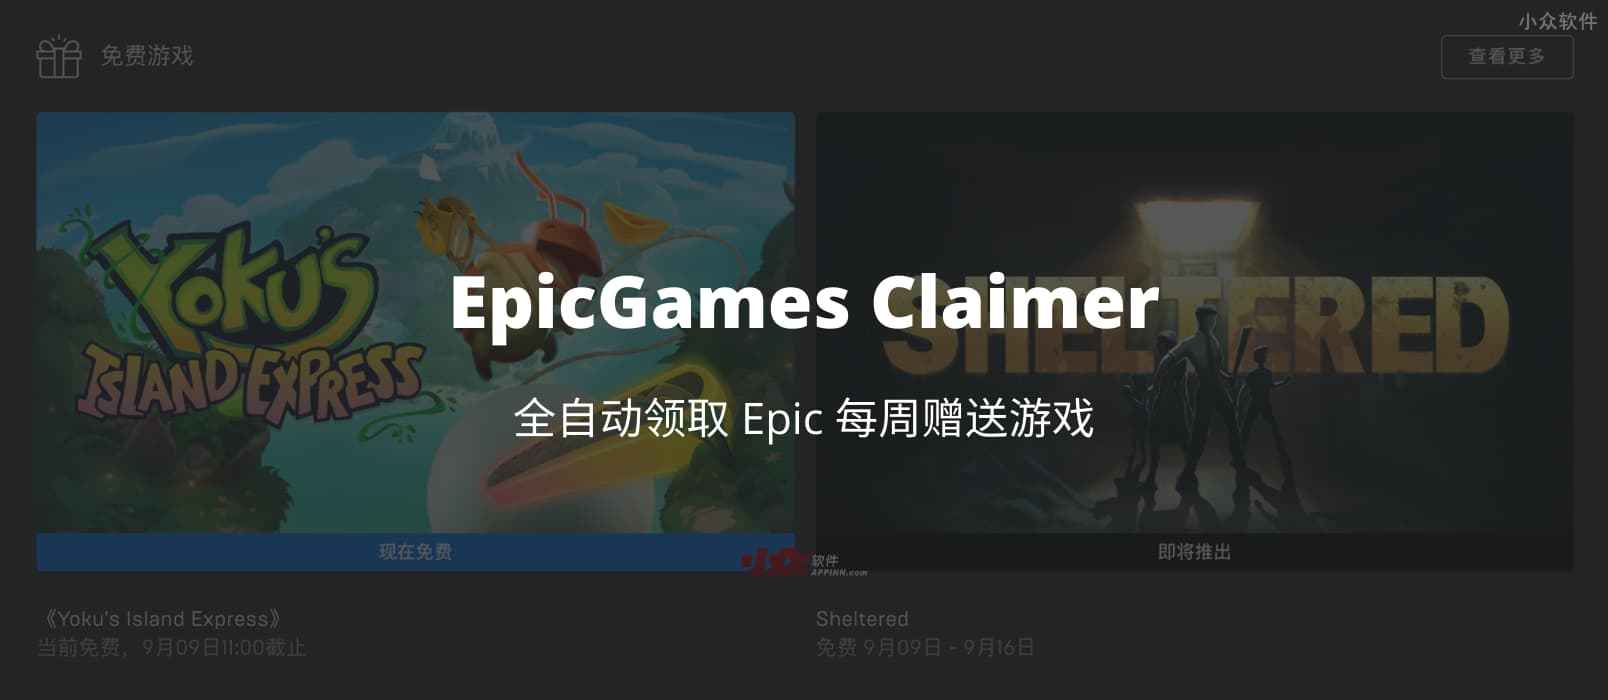 EpicGames Claimer -  用 Docker，全自动领取 Epic 每周赠送游戏